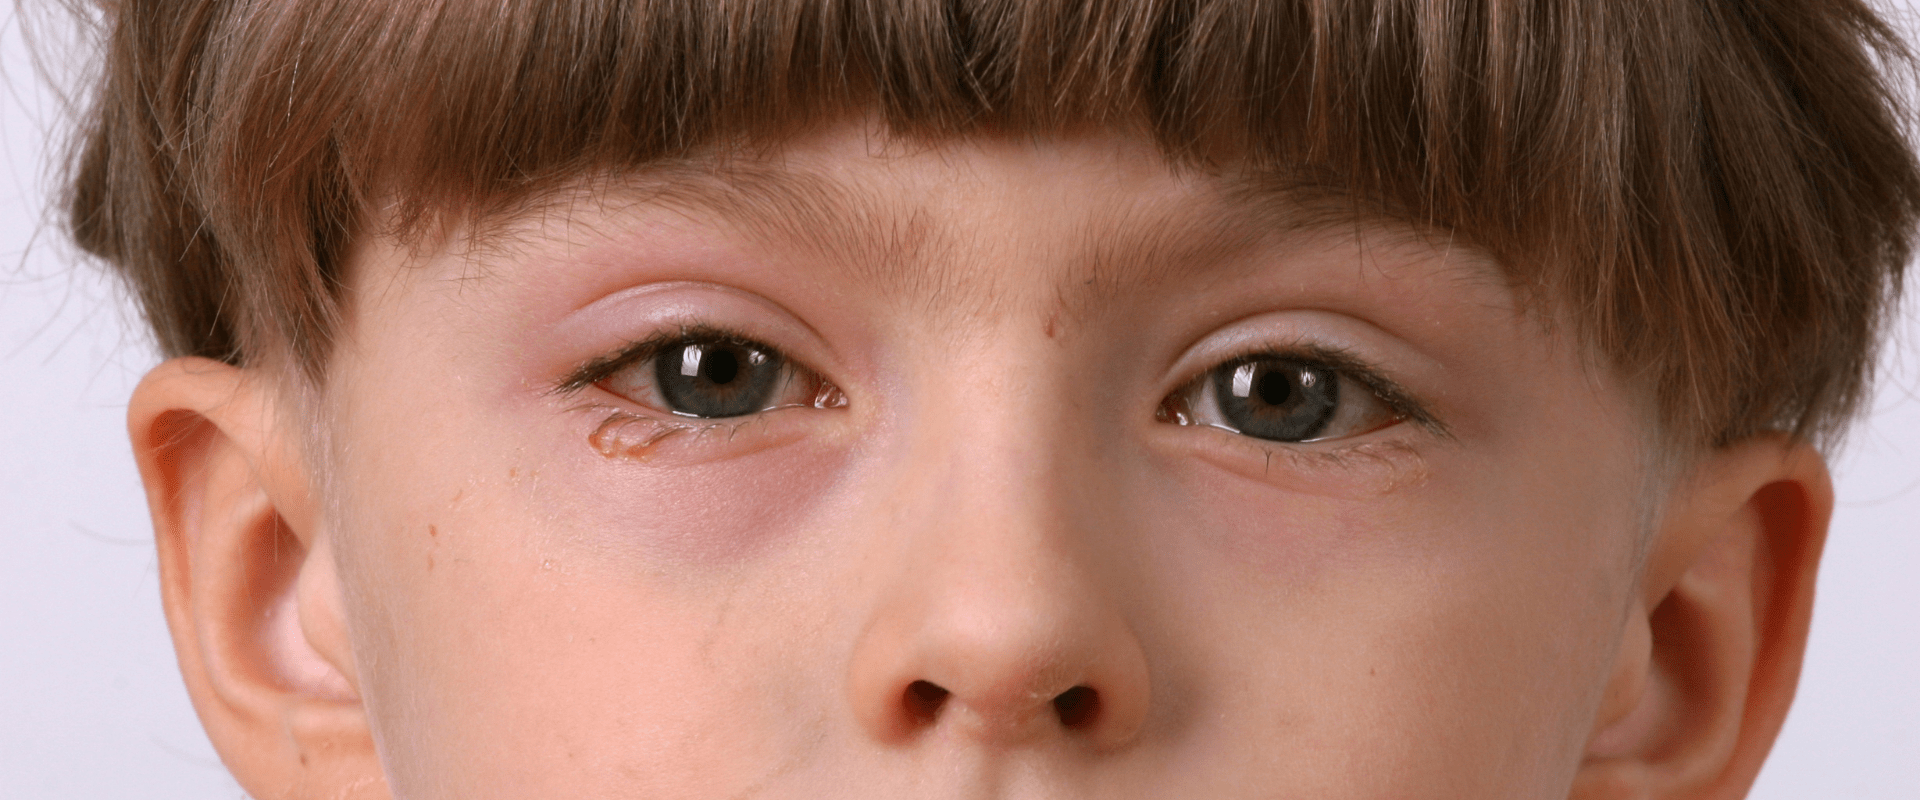 От коньюктивита 3 года. Поллинозный конъюнктивит. Аллергенный конъюнктивит. Аллергический конъюнктивит отек глаз. Аллергический конъюнктивит глаза у детей.